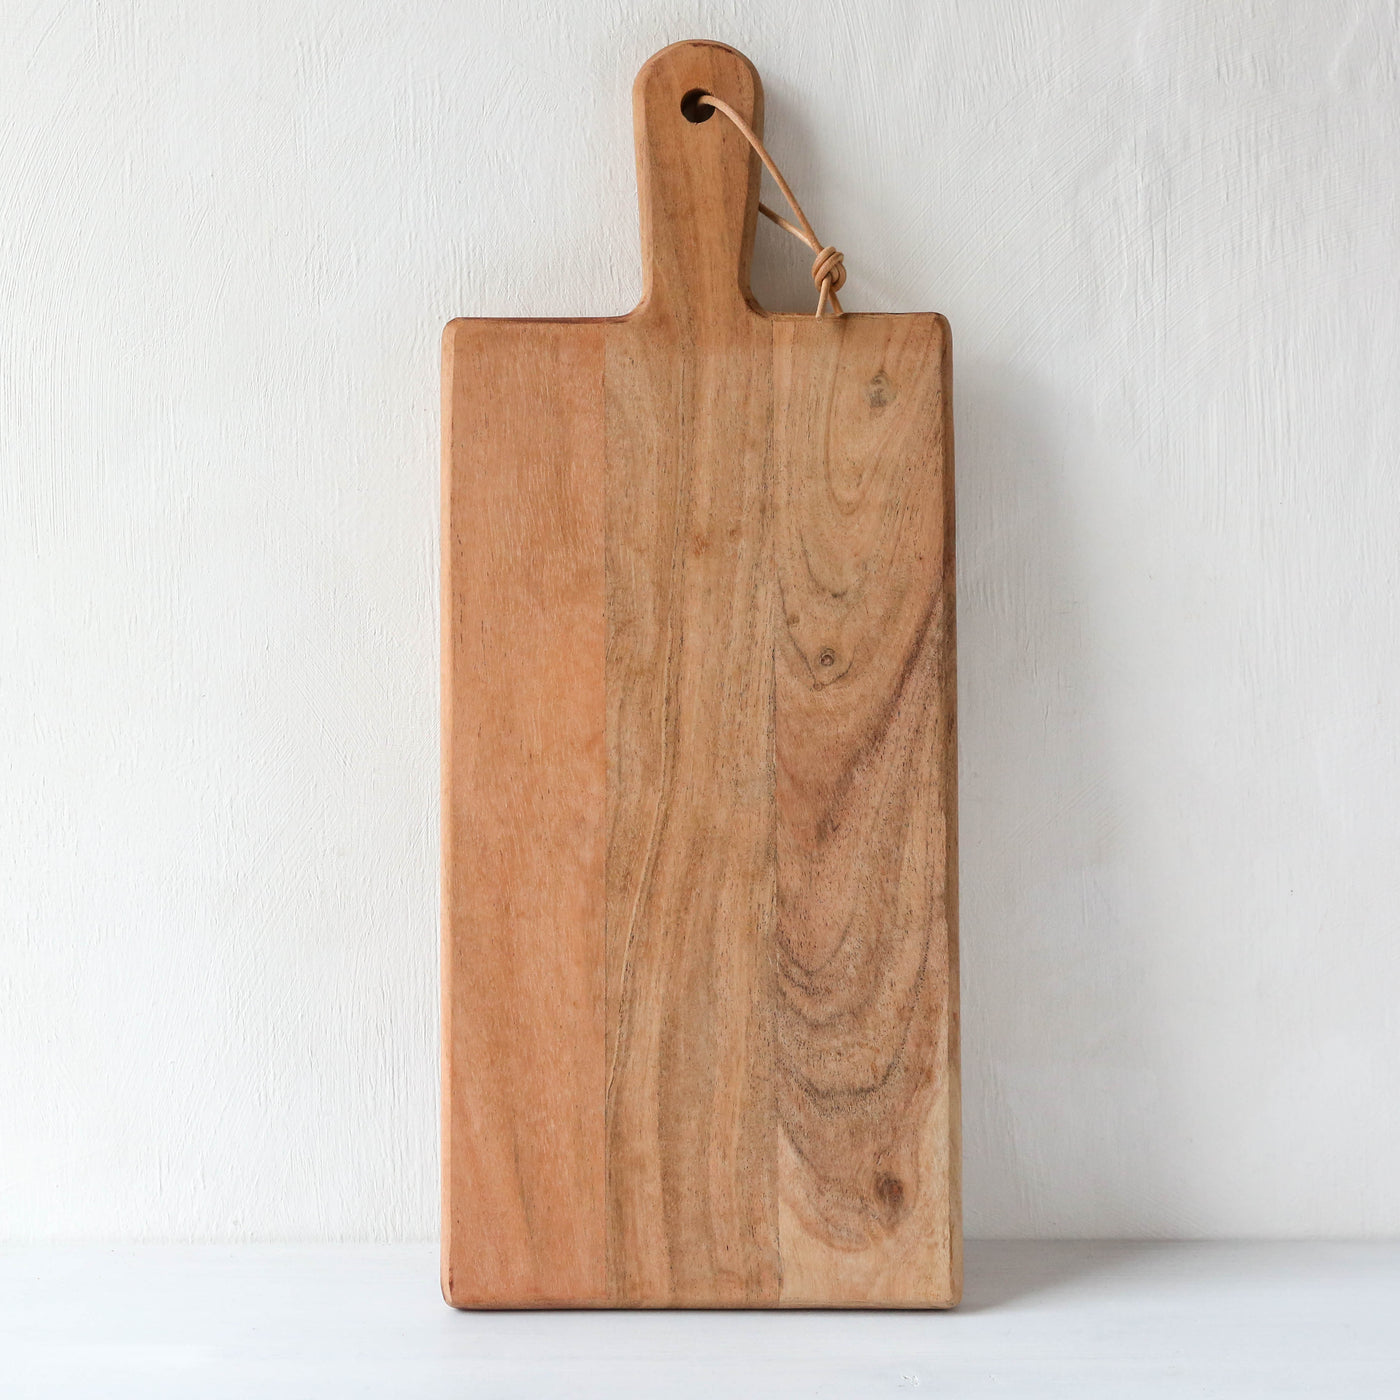 Small Acacia Wood Chopping Board